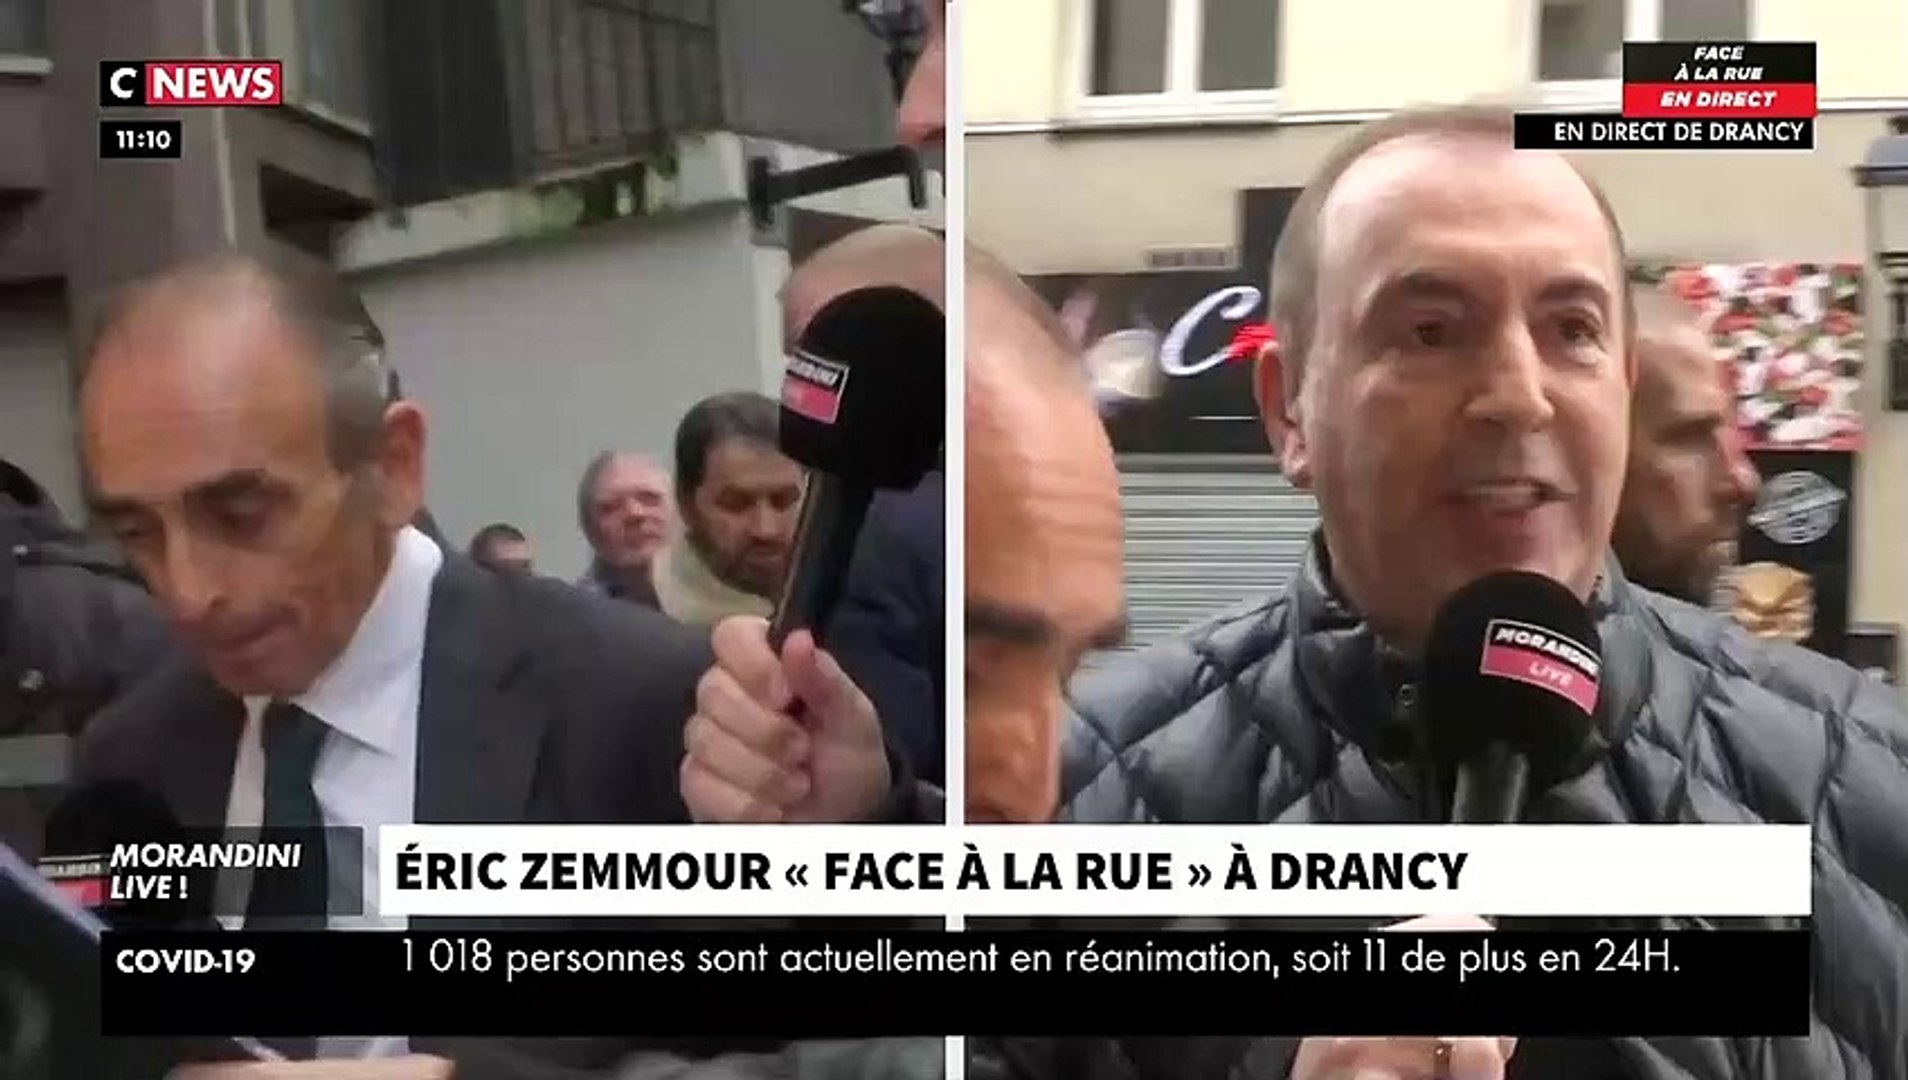 echange tendu entre eric zemmour et un ancien detenu en direct dans morandini live sur cnews video video dailymotion